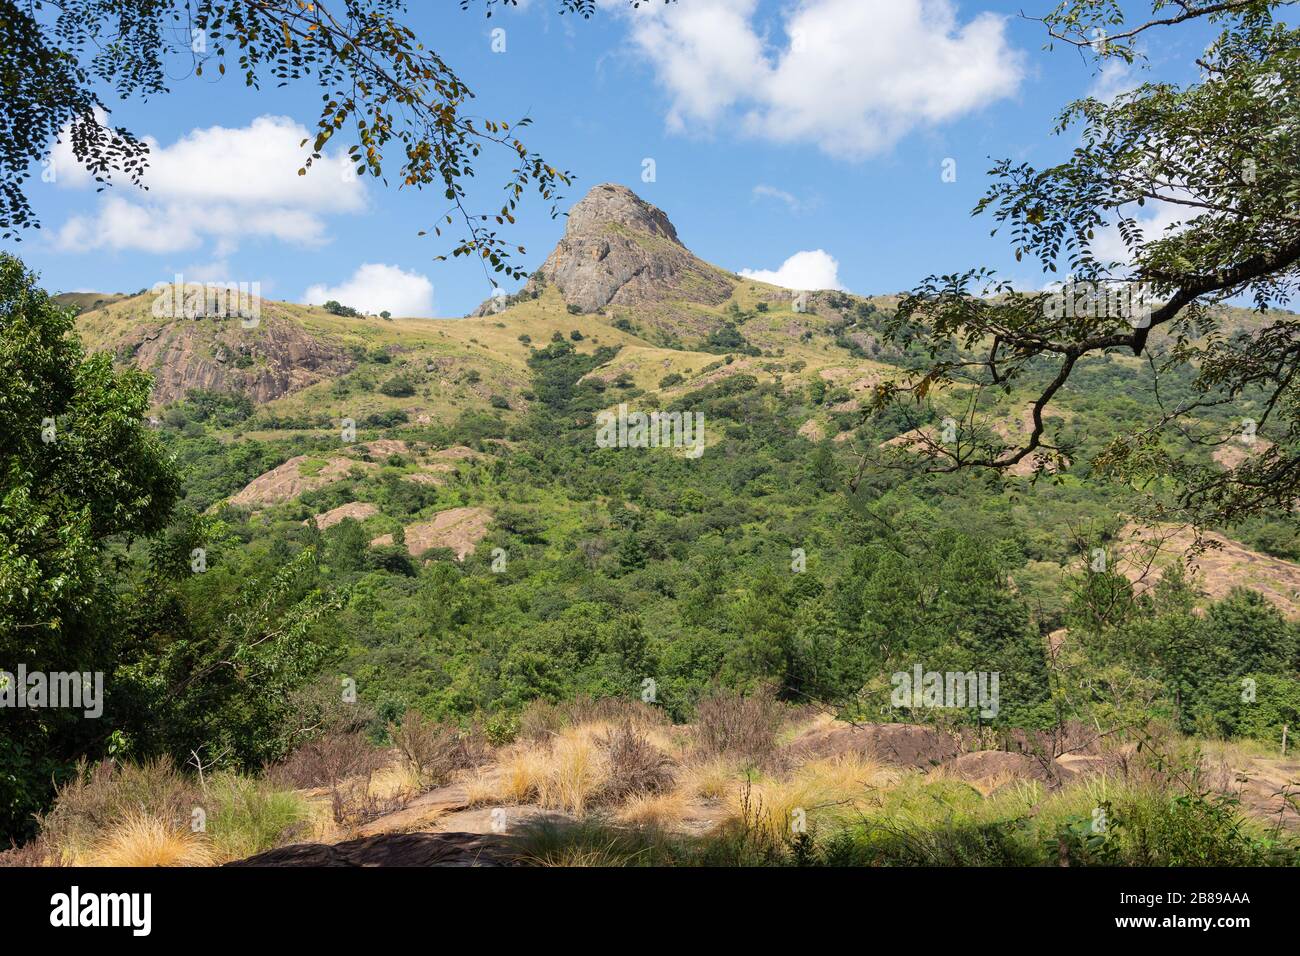 Paysage de montagne à la réserve naturelle de Mantenga, Lobamba, vallée d'Ezulwini, région de Hhohho, Royaume d'Eswatini (Swaziland) Banque D'Images